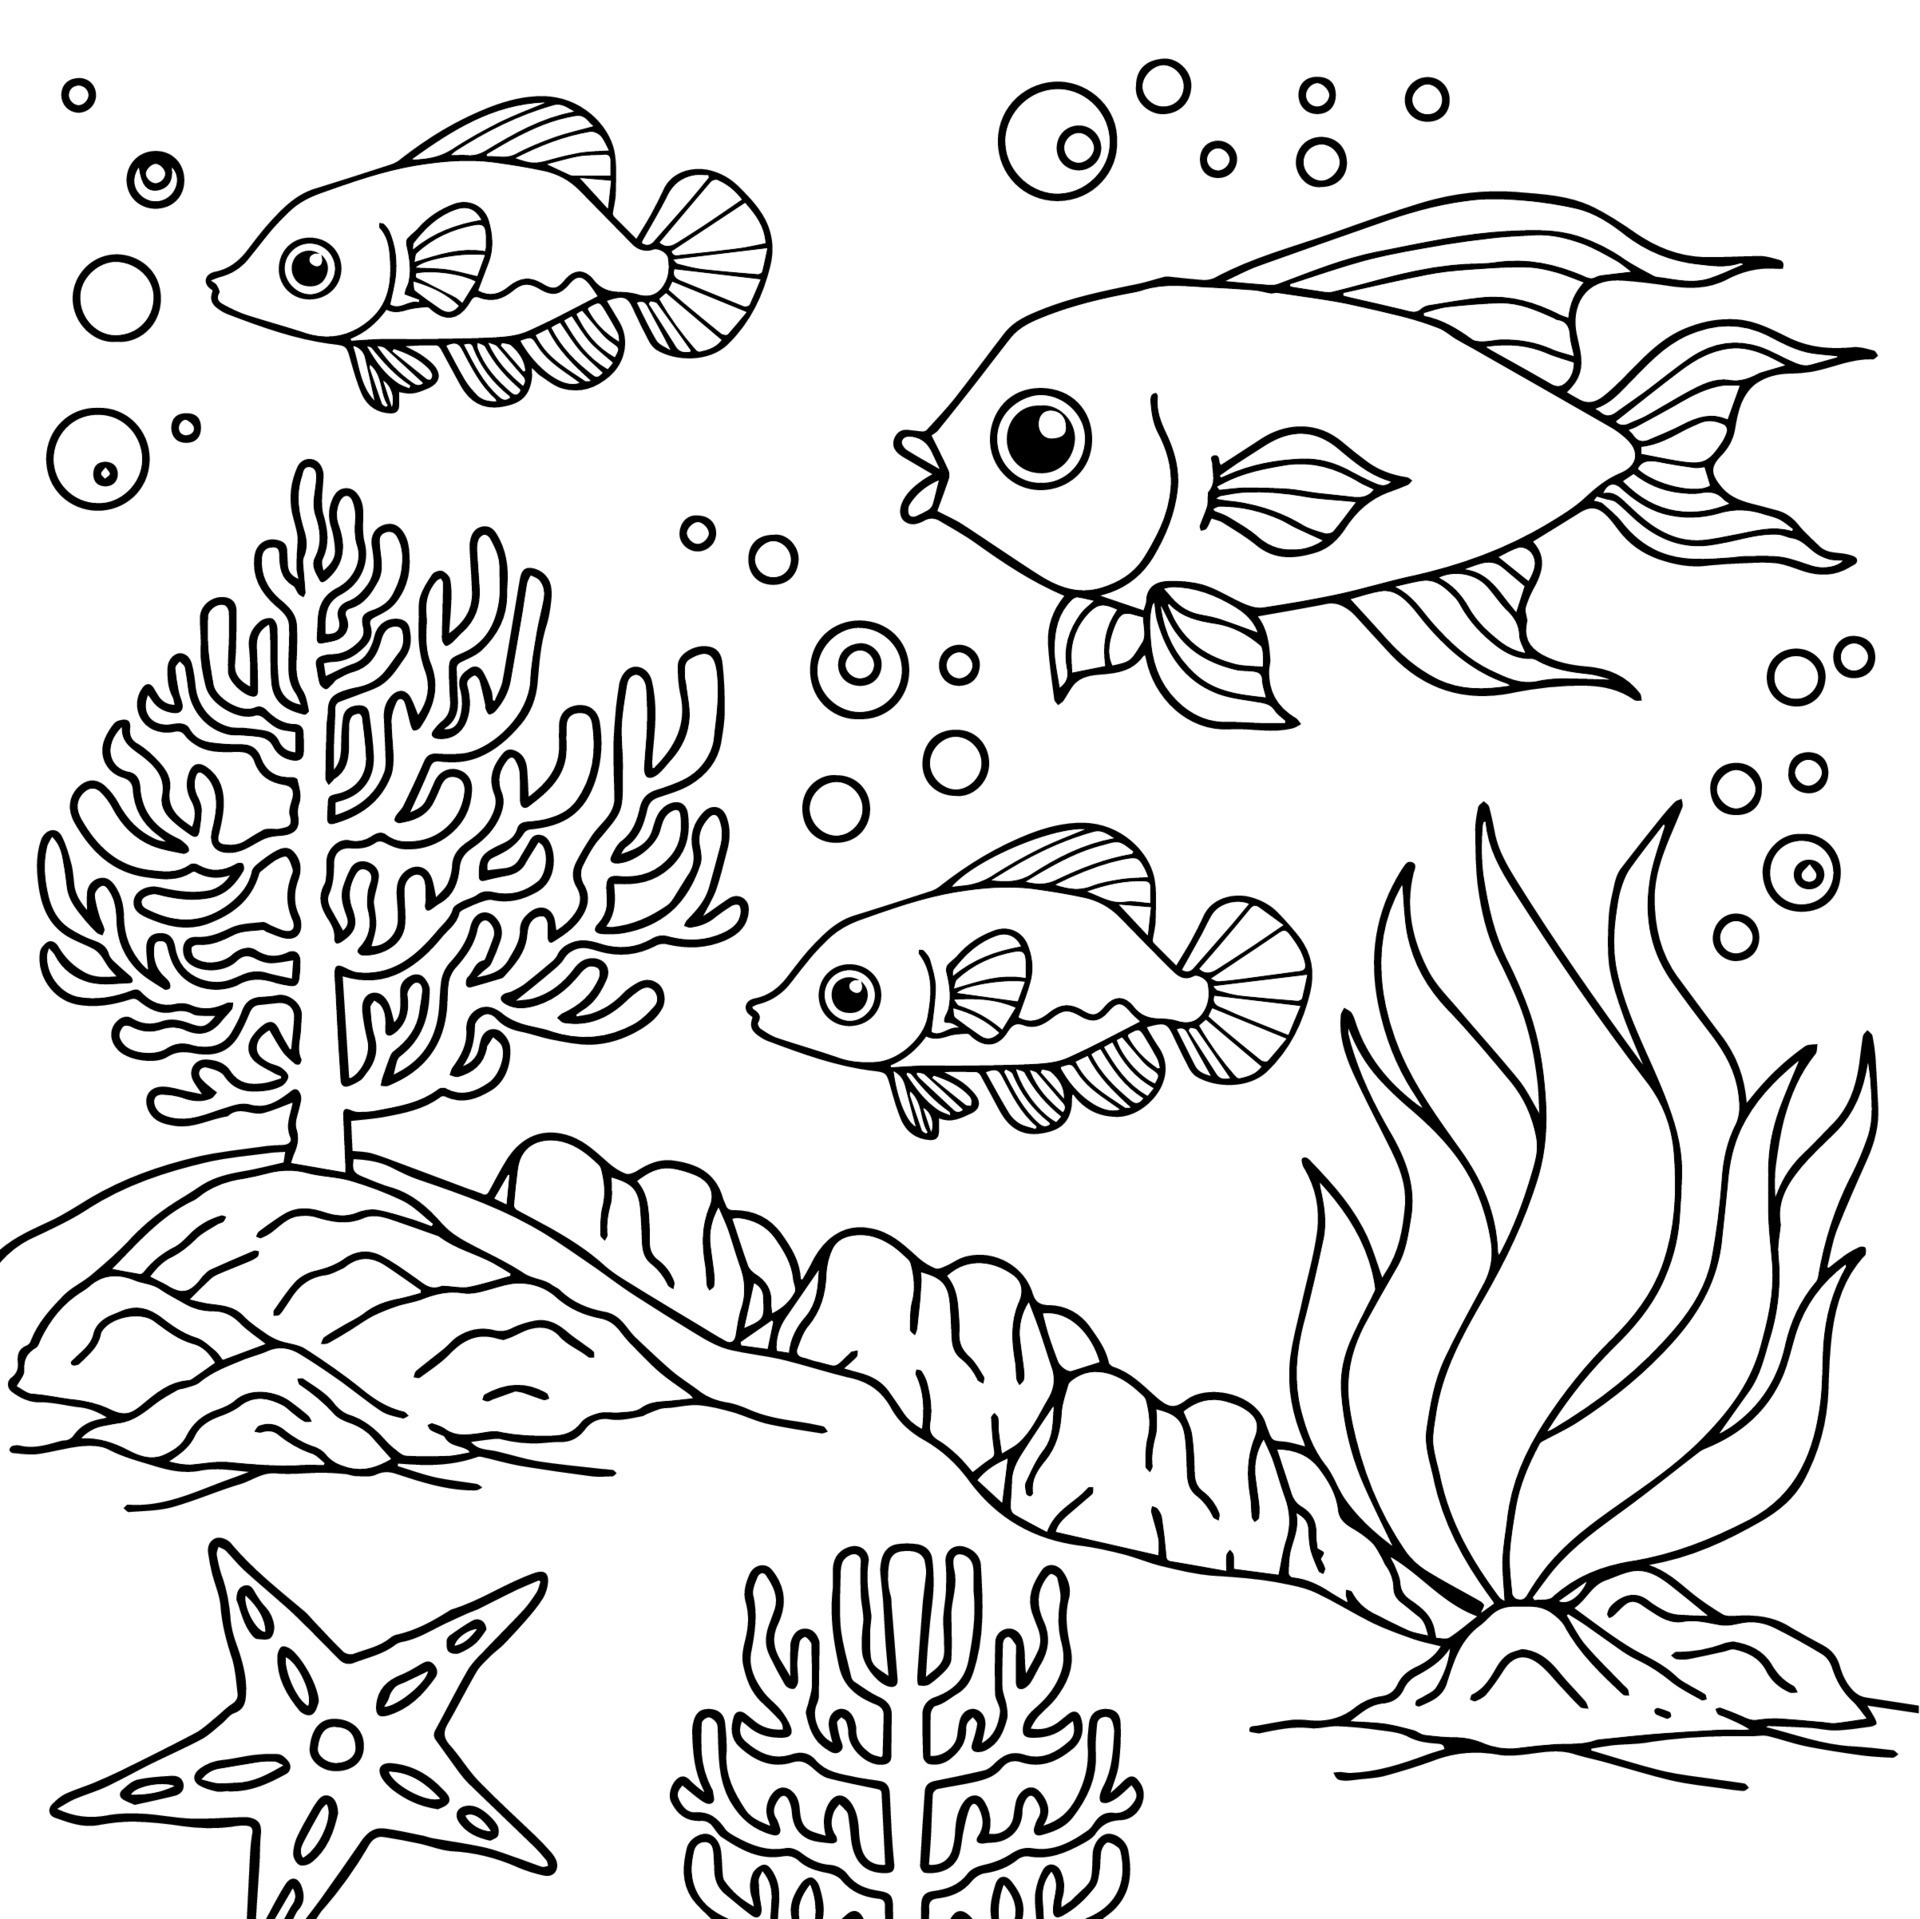 desenho vetorial para colorir para peixe infantil debaixo d'água 9921912  Vetor no Vecteezy